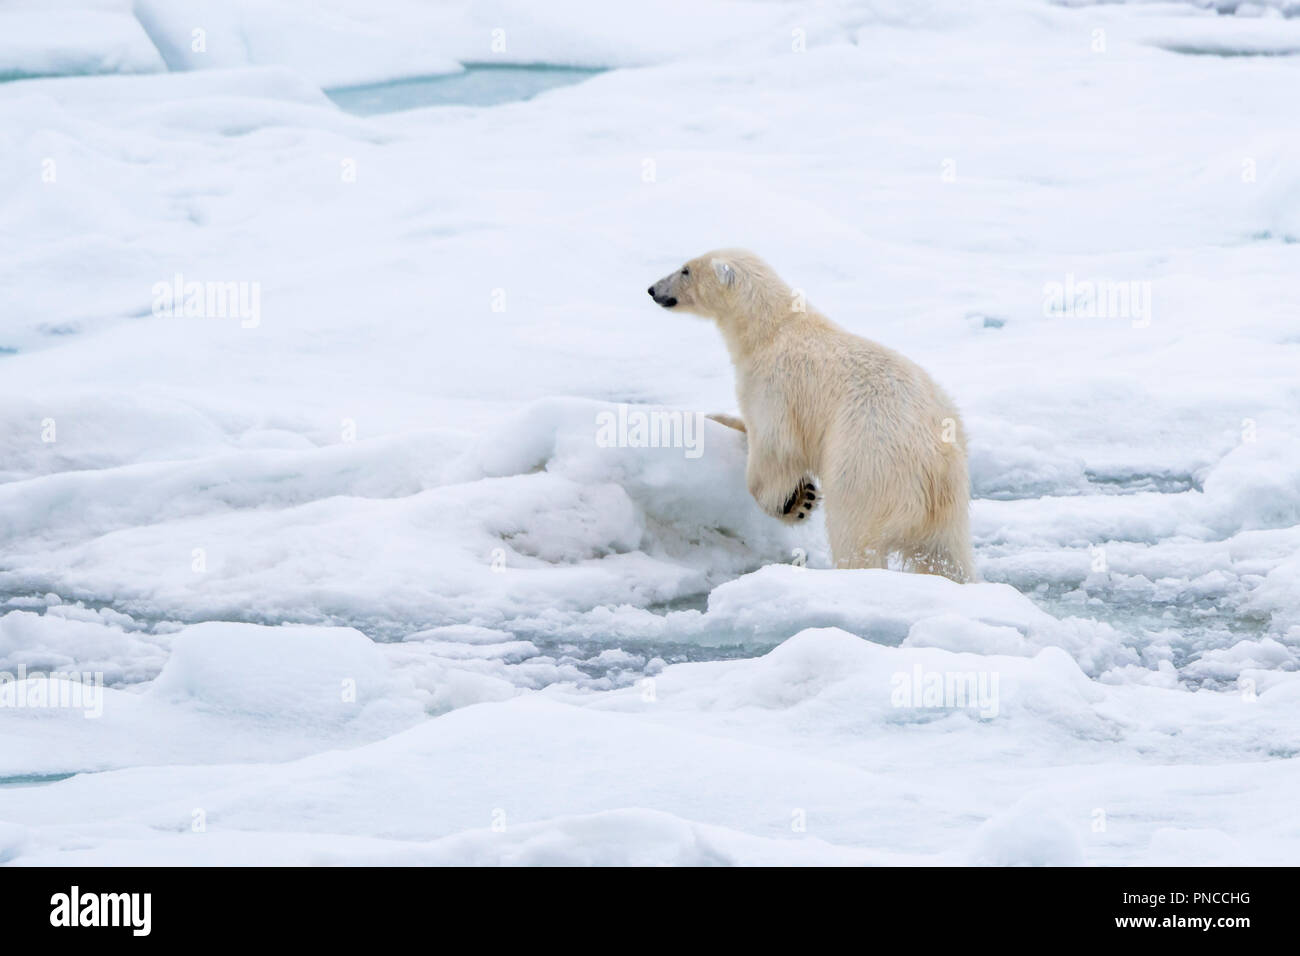 El oso polar (Ursus maritimus) viajar sobre el hielo del mar frente a la costa de Svalbard, Noruega. Foto de stock